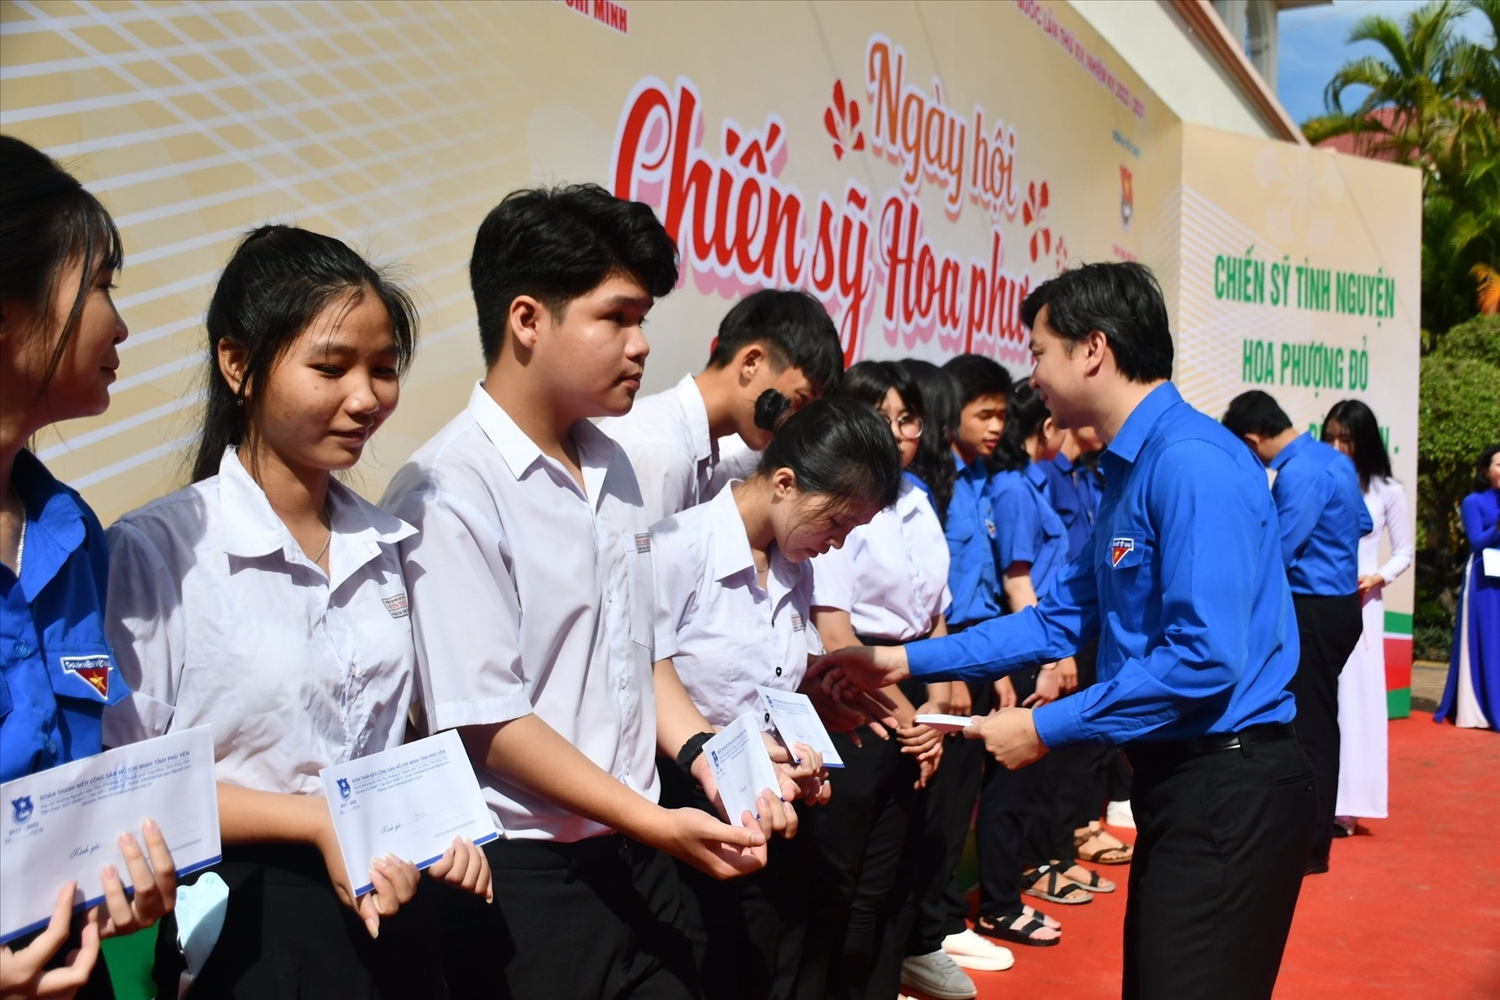 Đồng chí Nguyễn Minh Triết, Bí thư Trung ương Đoàn, Chủ tịch Hội Sinh viên Việt Nam, trao học bổng cho các học sinh